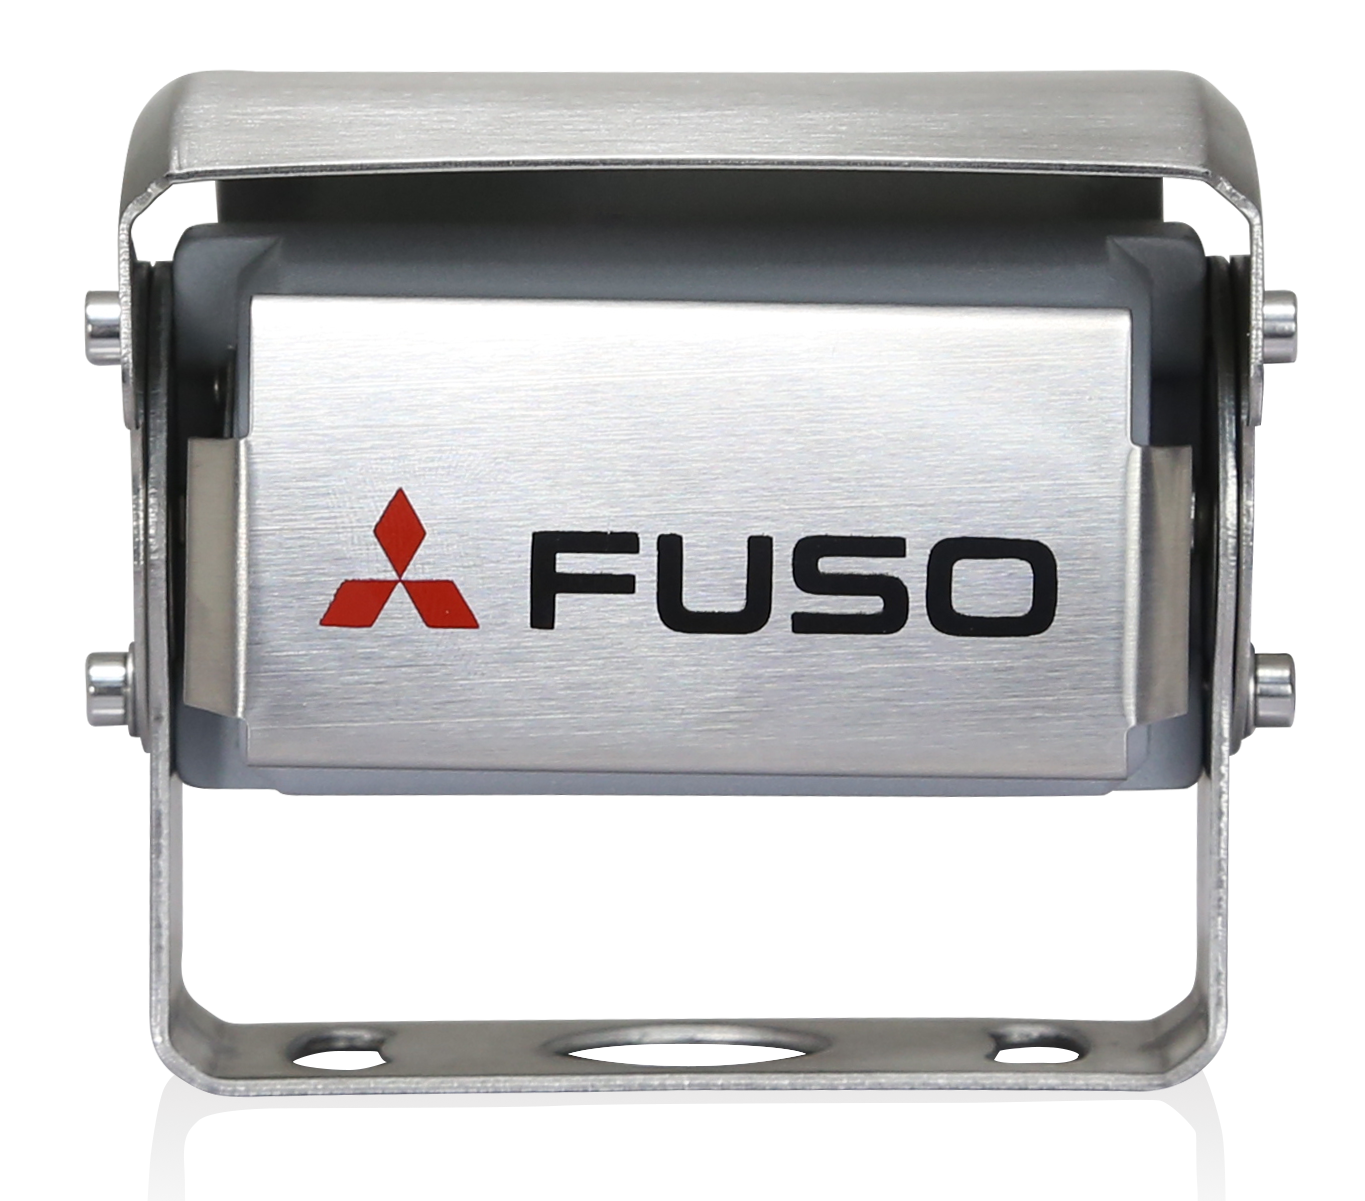 La cámara de marcha atrás FUSO es un potente producto que combina las ventajas de la mejor visibilidad y la máxima seguridad. Dispone de un micrófono integrado que proporciona una mejor percepción de la zona trasera del vehículo. En la oscuridad, el color de la pantalla cambia automáticamente para proporcionar al conductor una visibilidad óptima. El sistema puede funcionar con 12 y 24 V y cumple con los requisitos de prueba más estrictos de FUSO. La cámara es resistente al agua según la norma IP69K. La pantalla tiene una resolución de 800x480x3 (RGB).